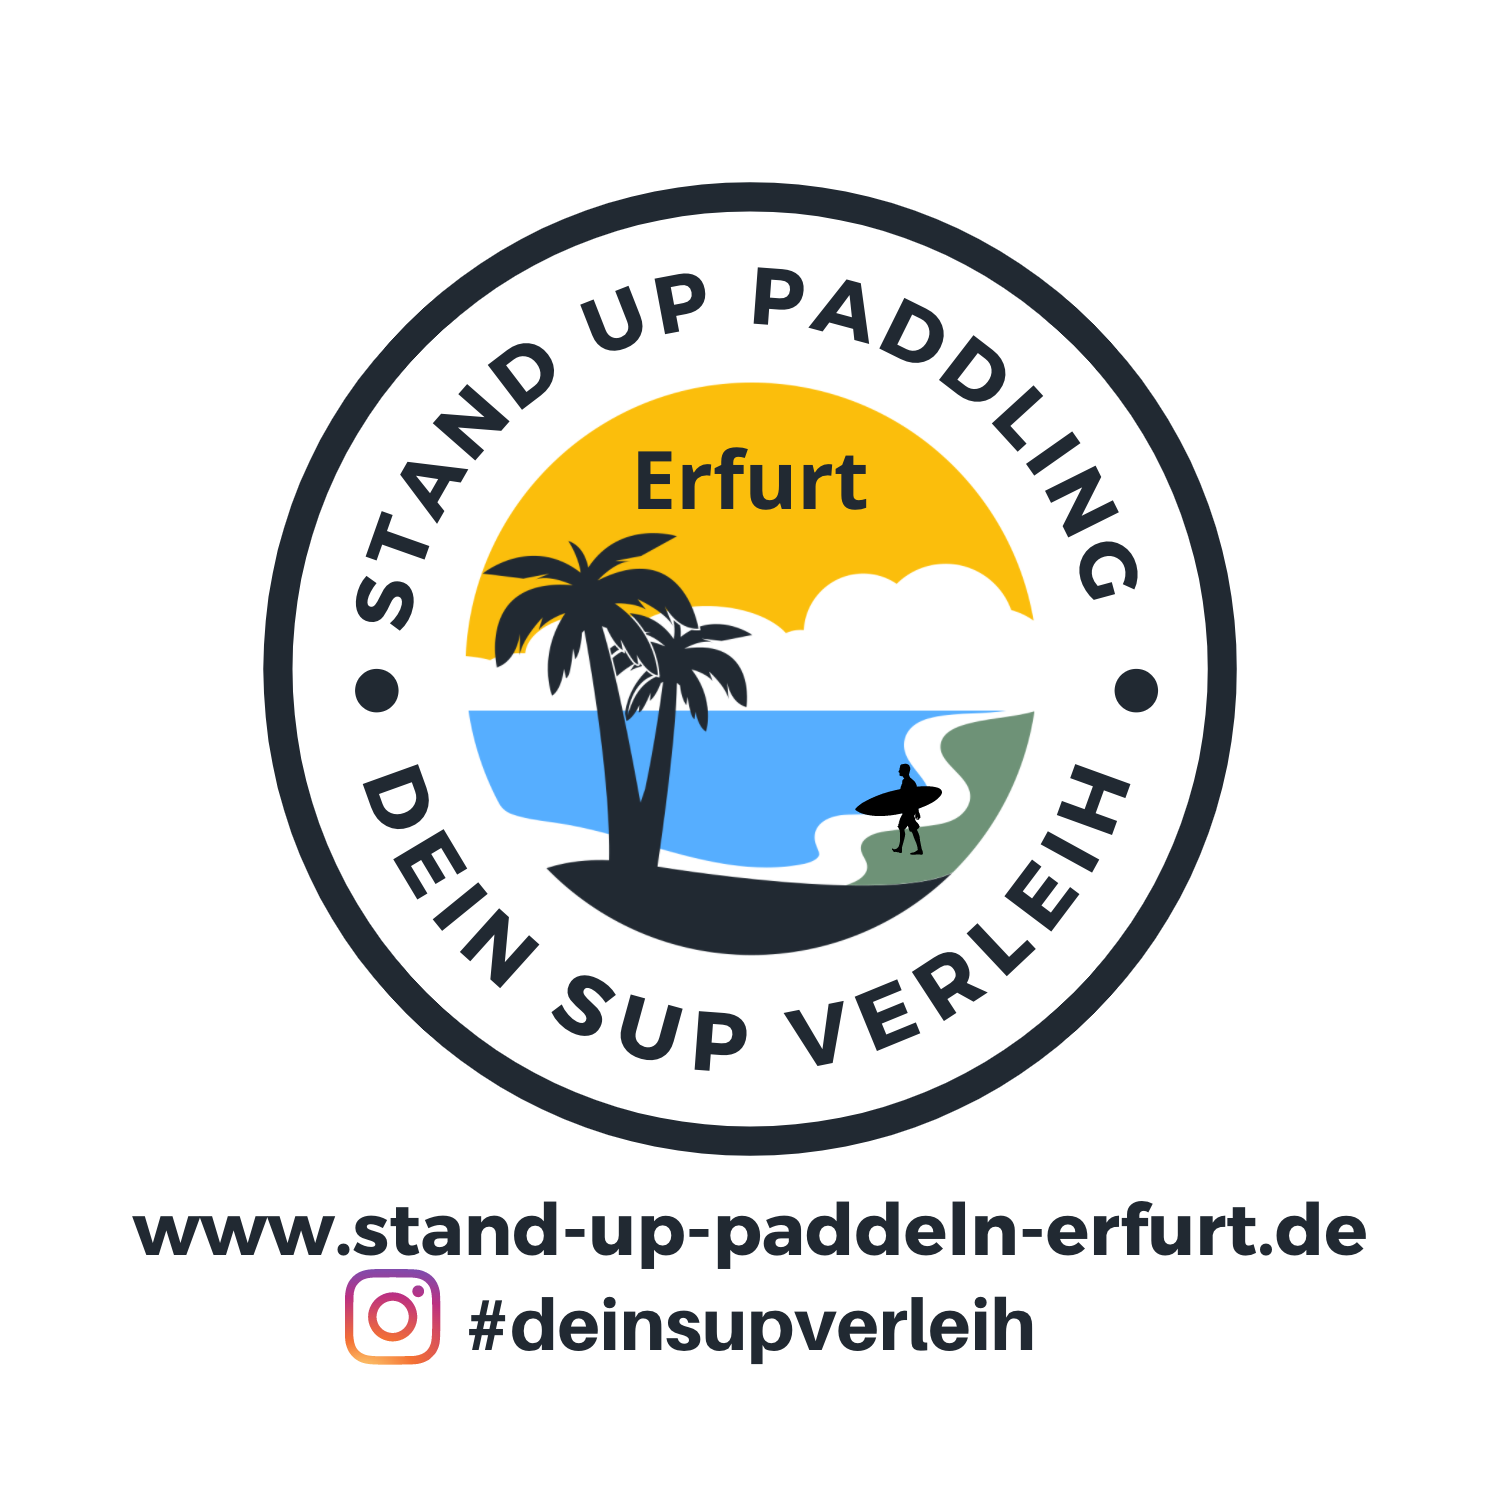 Logo Dein Verleih in Erfurt und Umgebung wenn es um Stand up paddeln geht